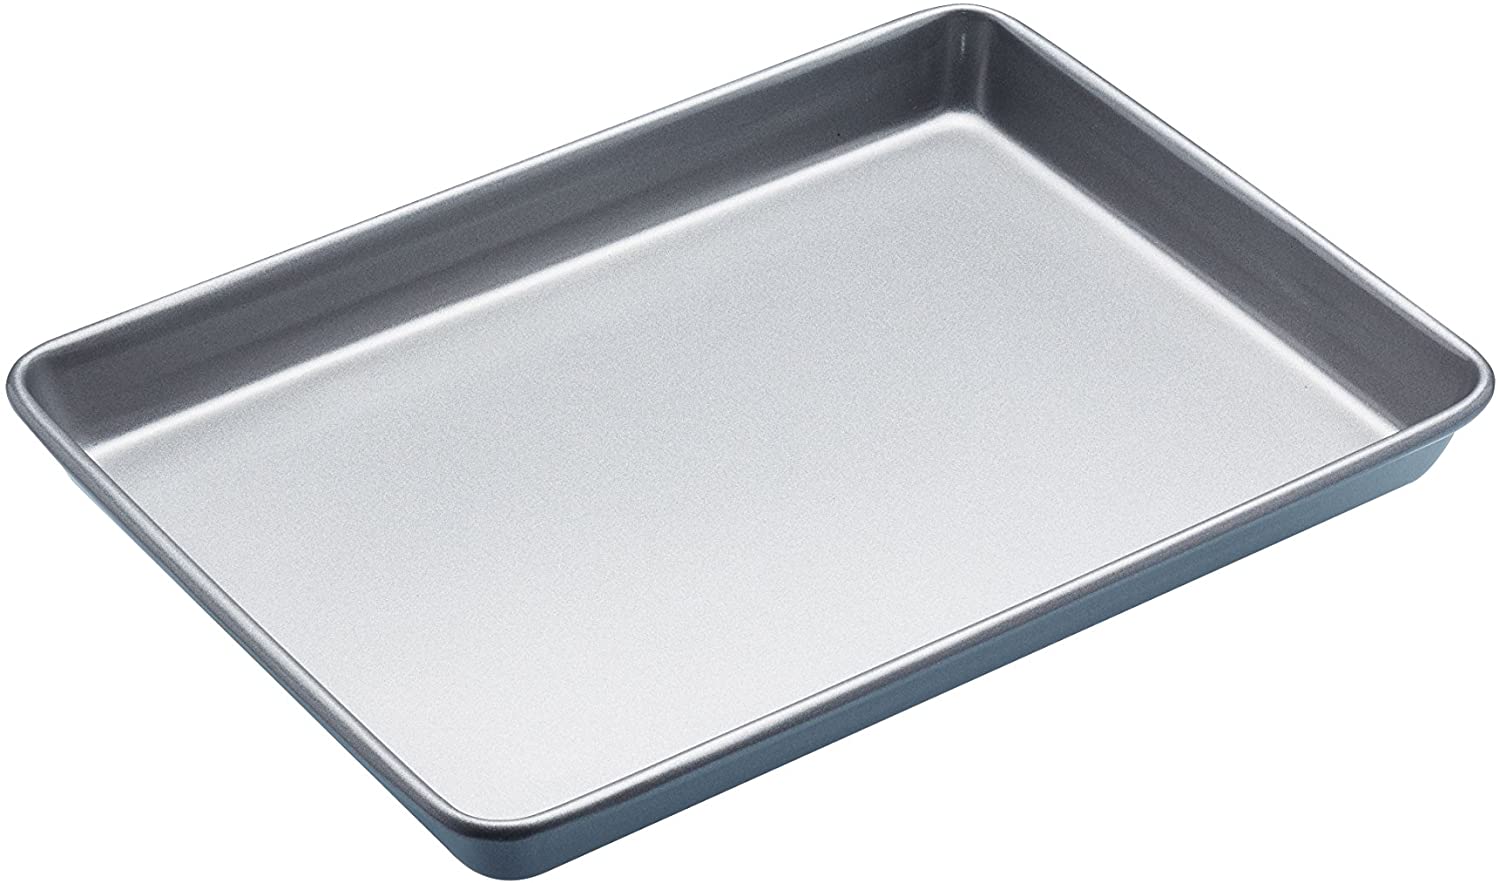 Kitchencraft 33 x 24 cm Baking Pan